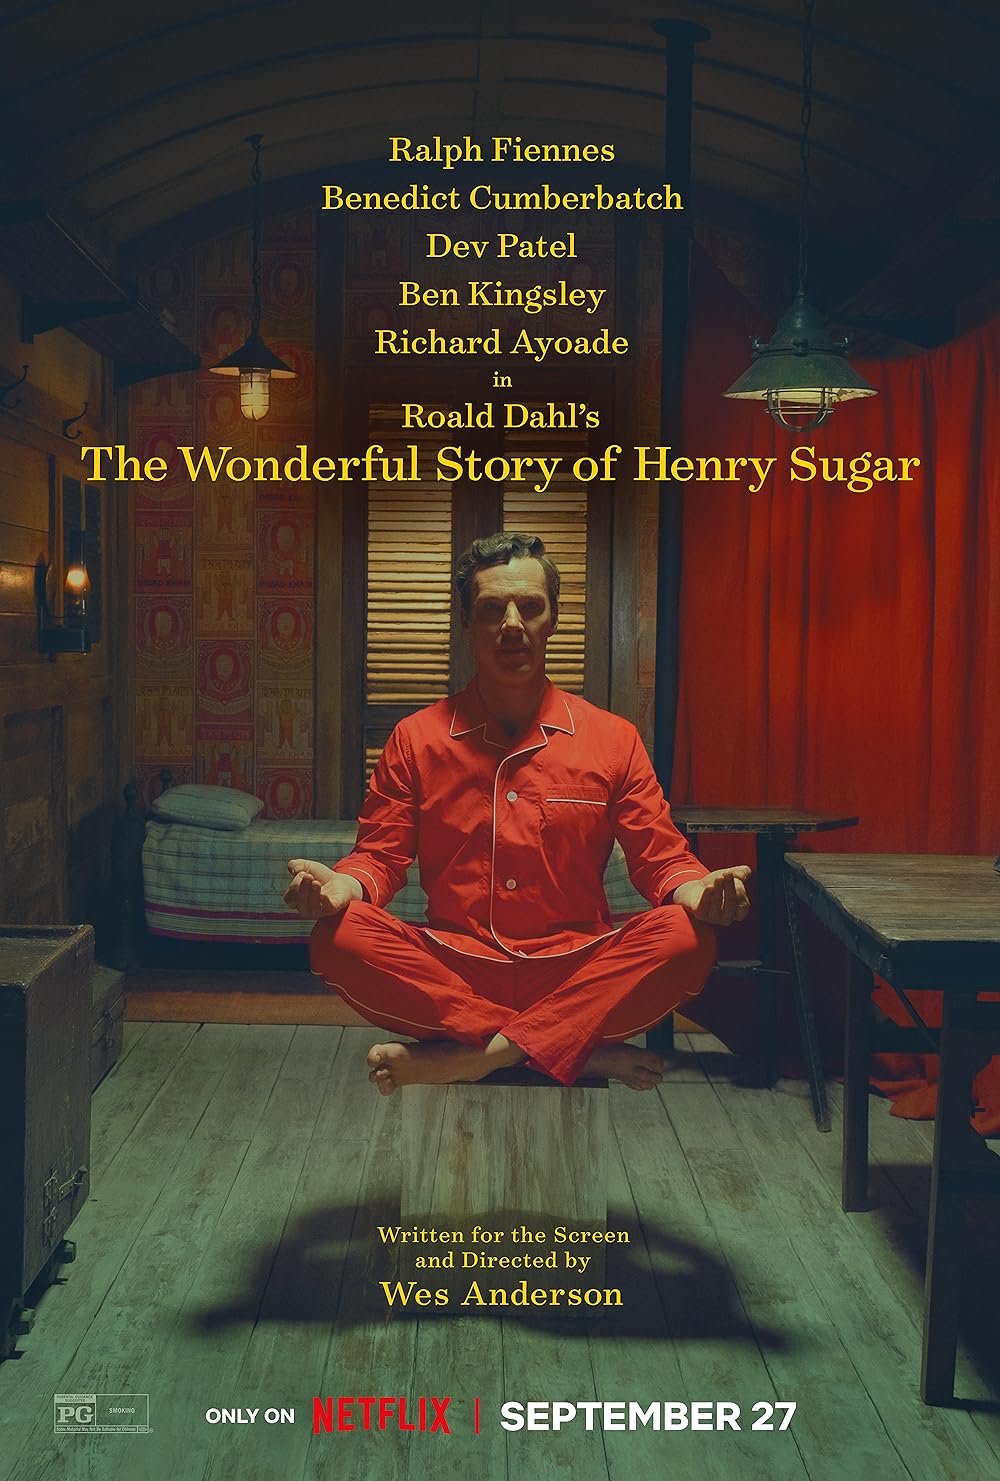 The Wonderful Story Of Henry Sugar image © Netflix